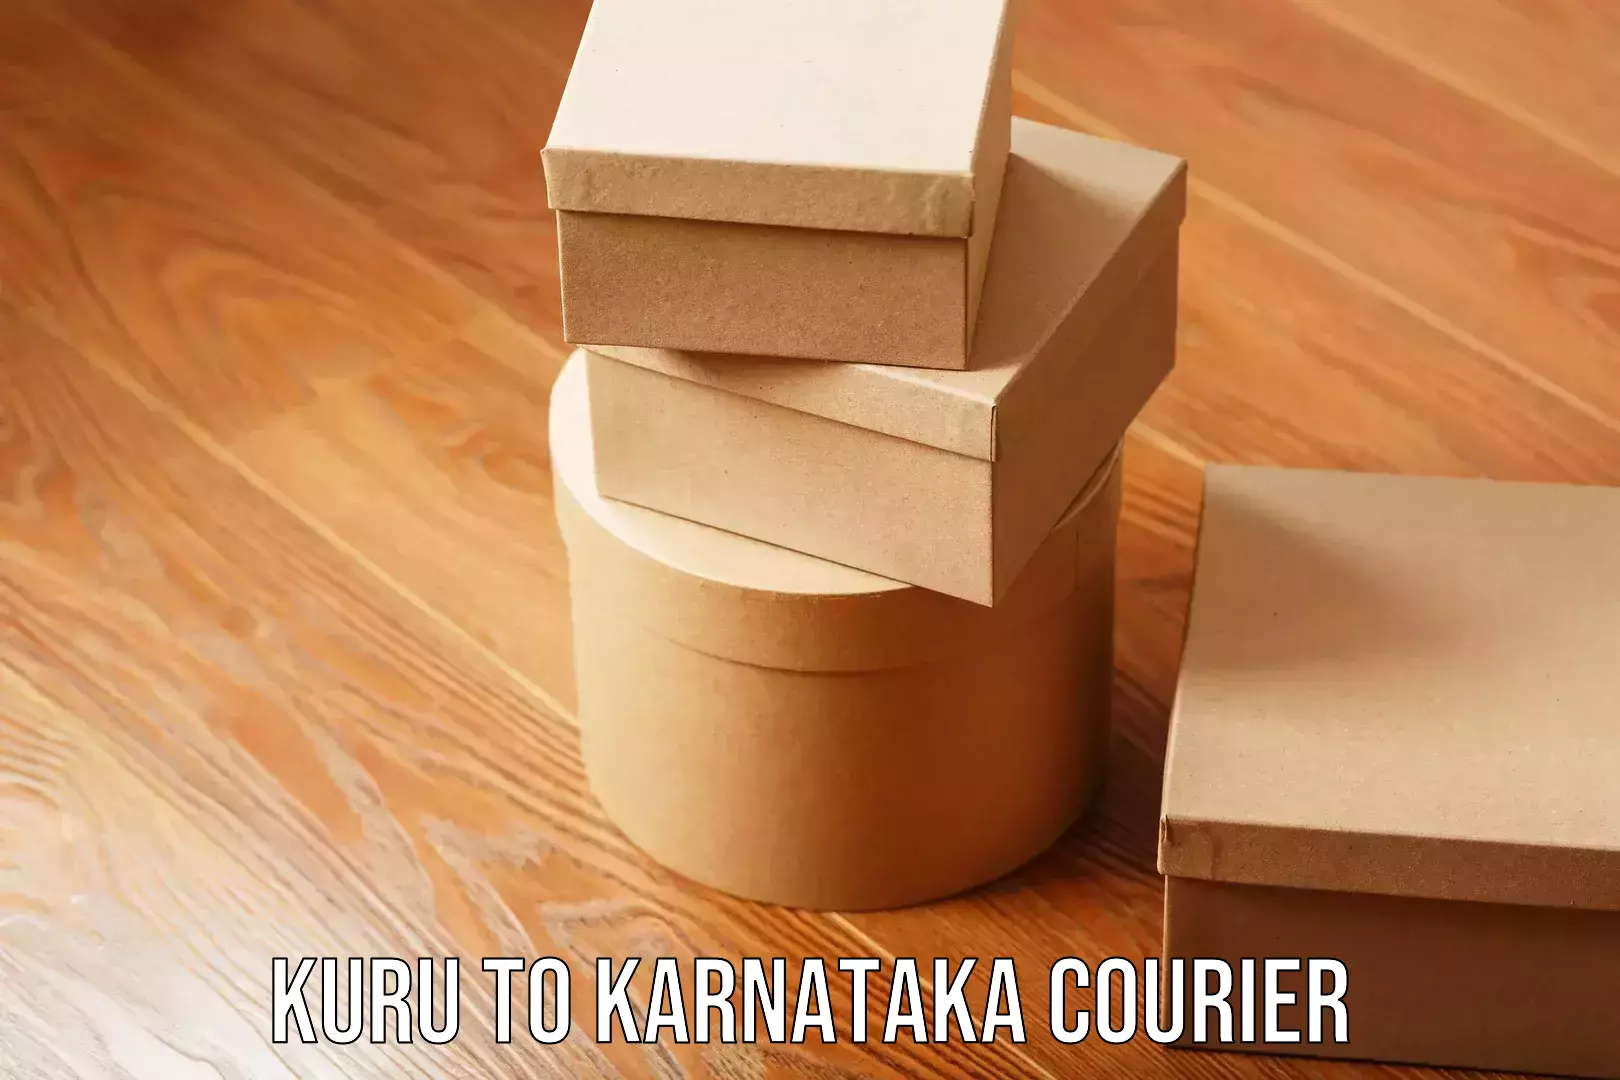 Household transport experts Kuru to Karnataka